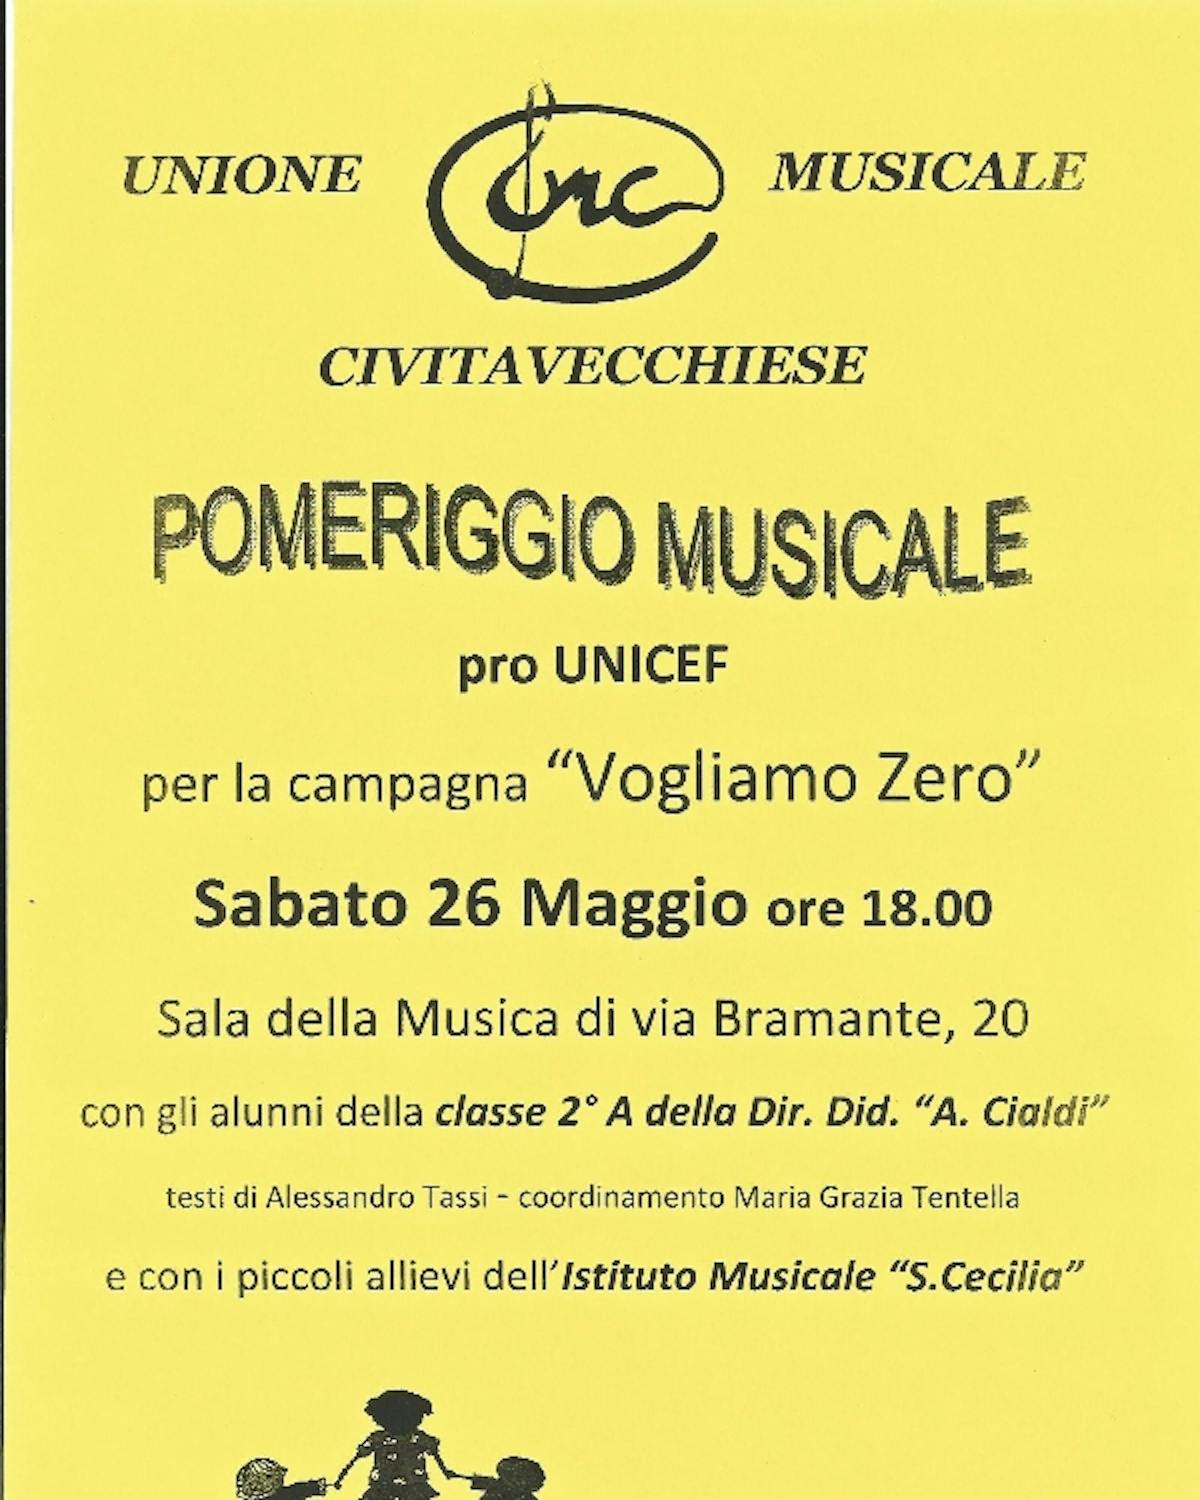 Un pomeriggio musicale a Civitavecchia contro la mortalità infantile